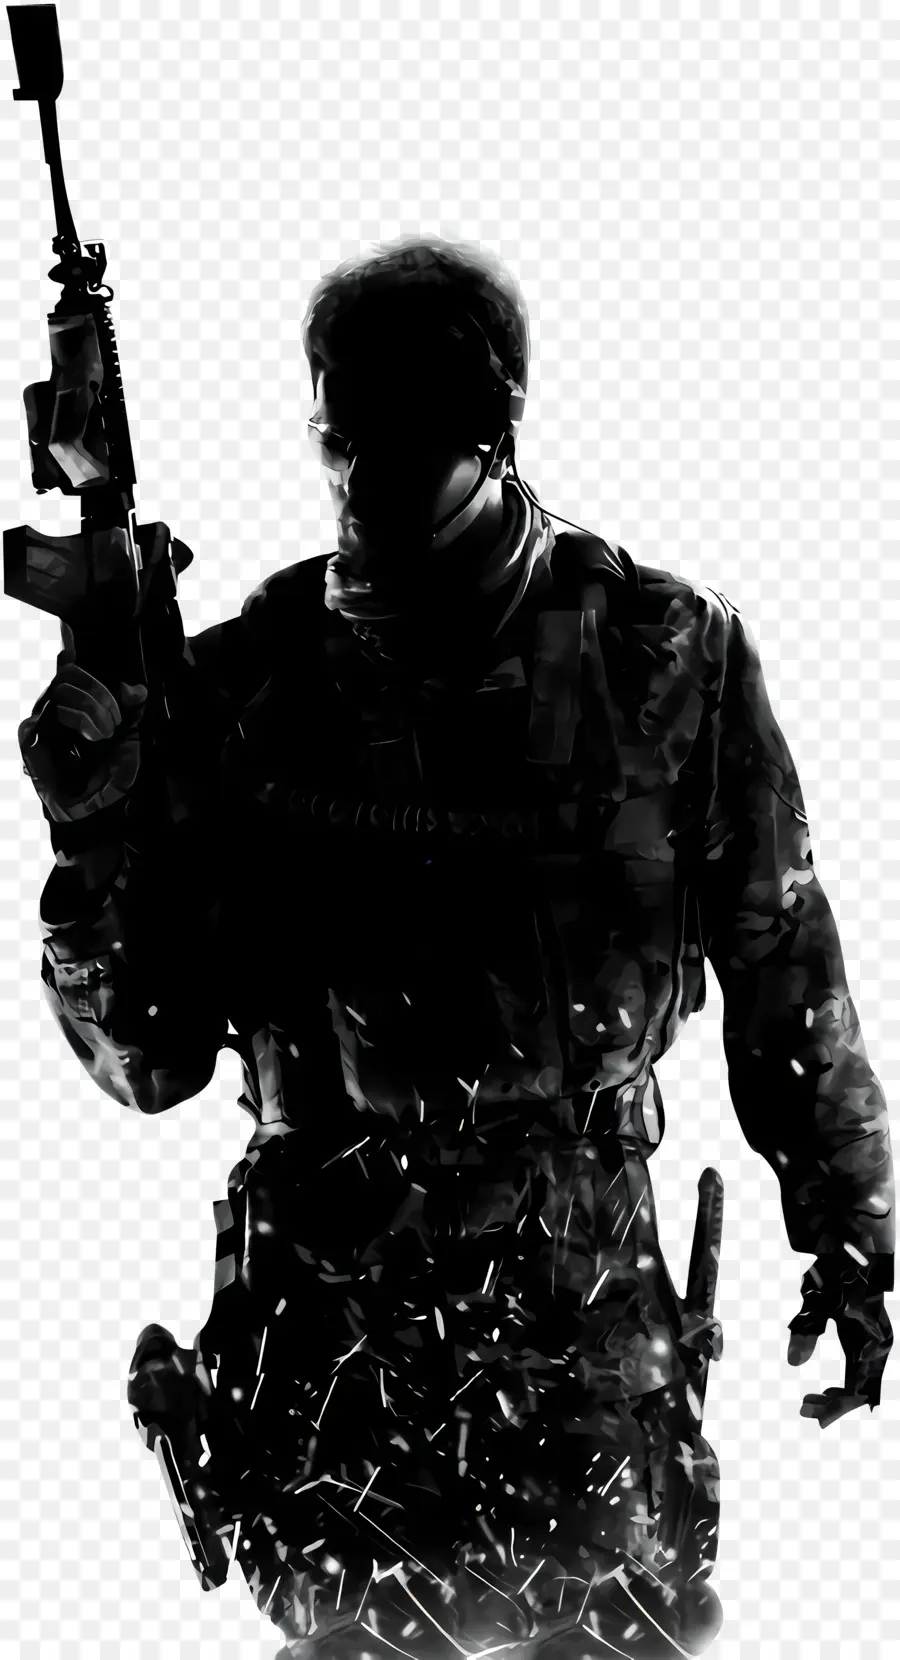 Call of Duty War Soldier Soldier Körperpanzer - Soldat mit Gewehr auf dem Dach, angespannte Stimmung